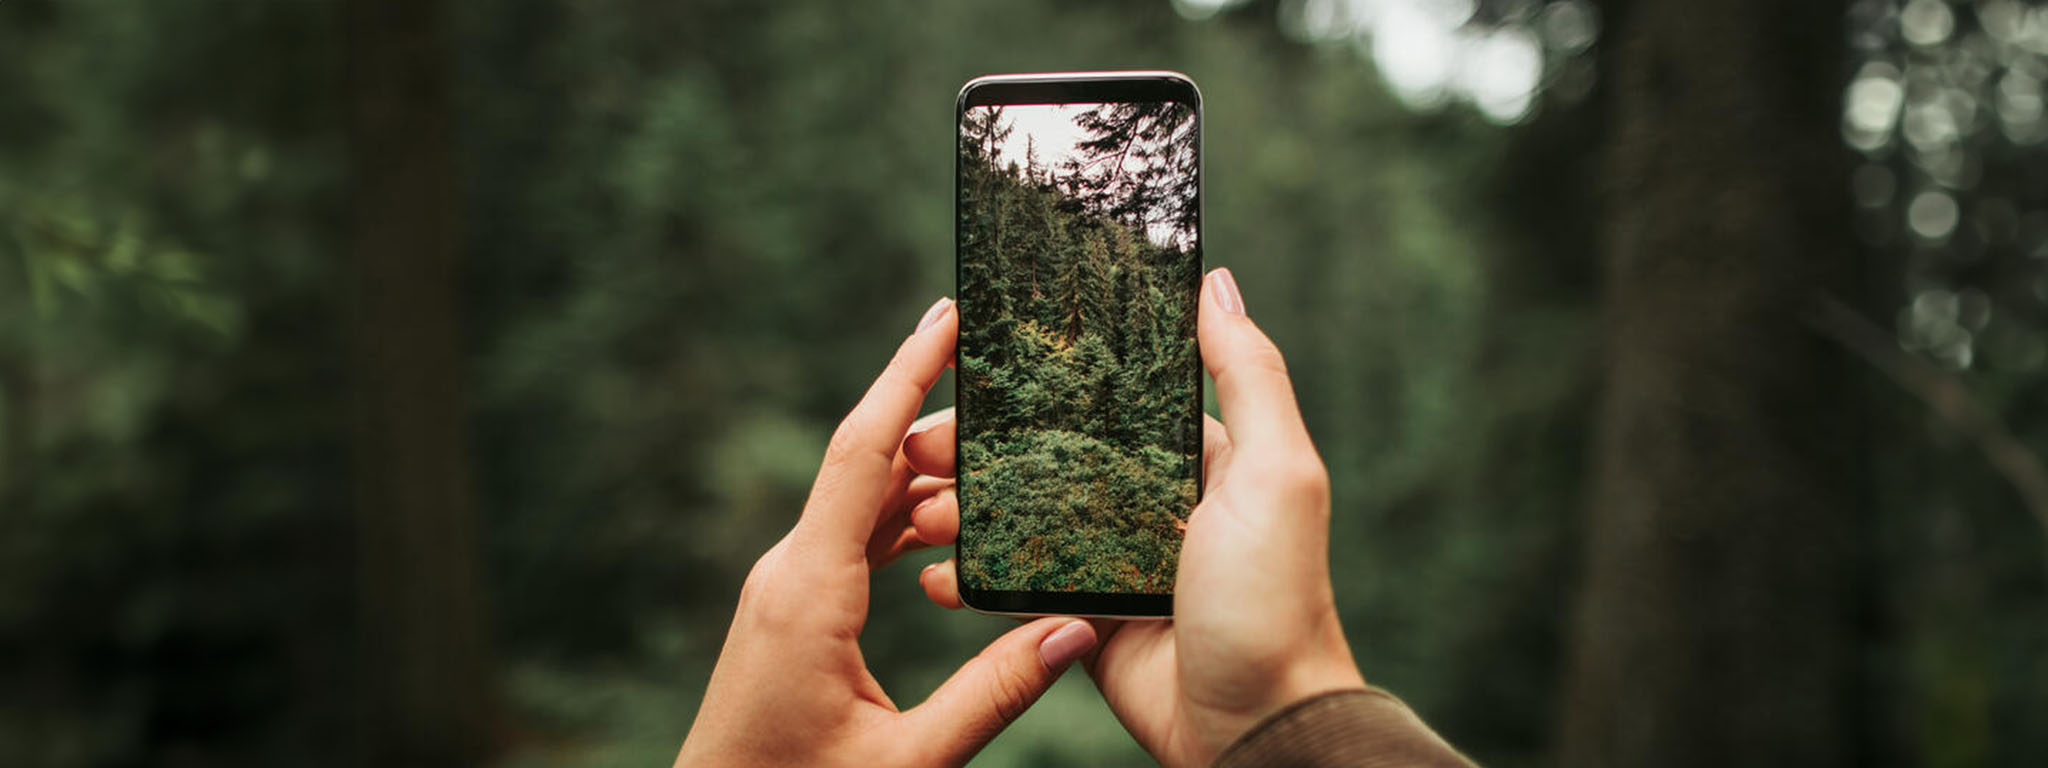 Kobieta z telefonem robiąca zdjęcie pięknego lasu.